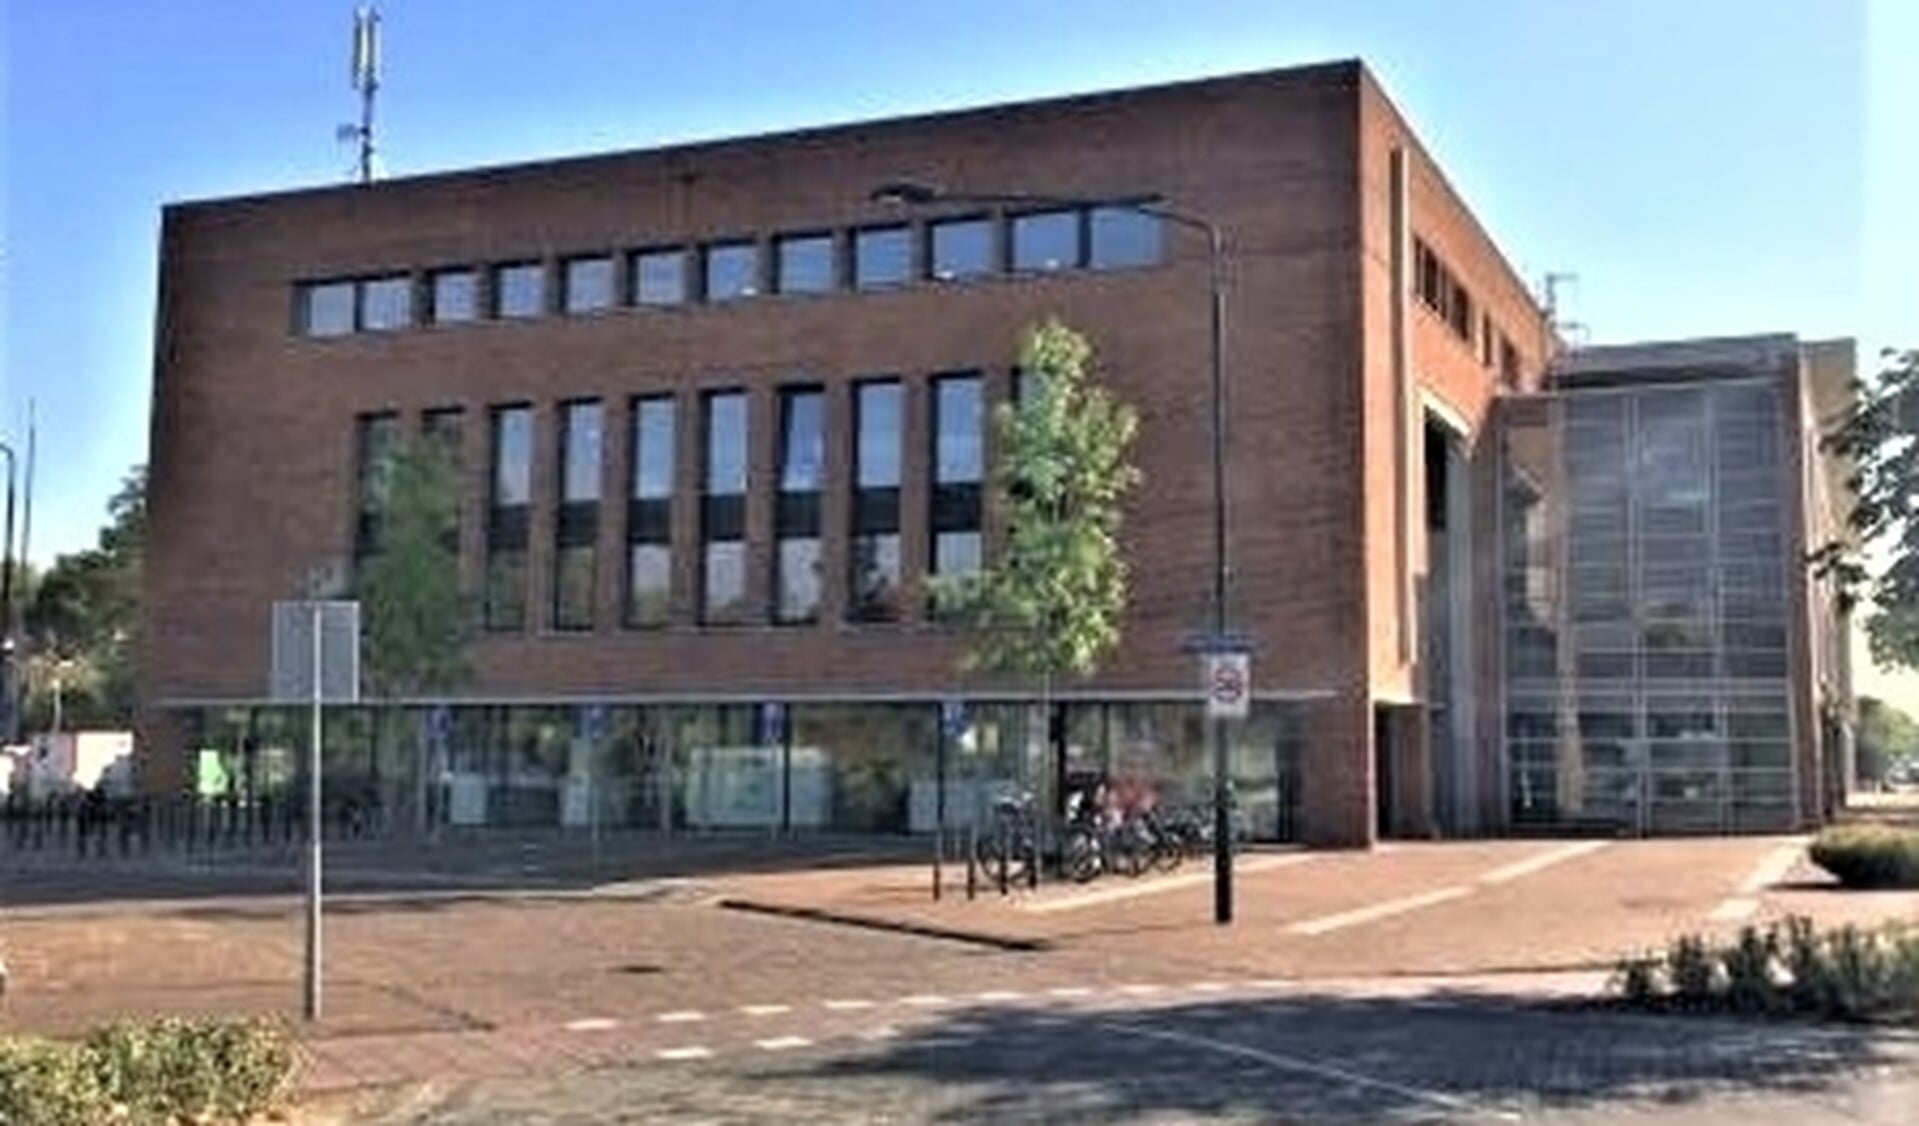 Het Servicecentrum van de gemeente Leidschendam-Voorburg aan de Koningin Wilhelminalaan in Leidschendam (foto: gemeente LDVB).